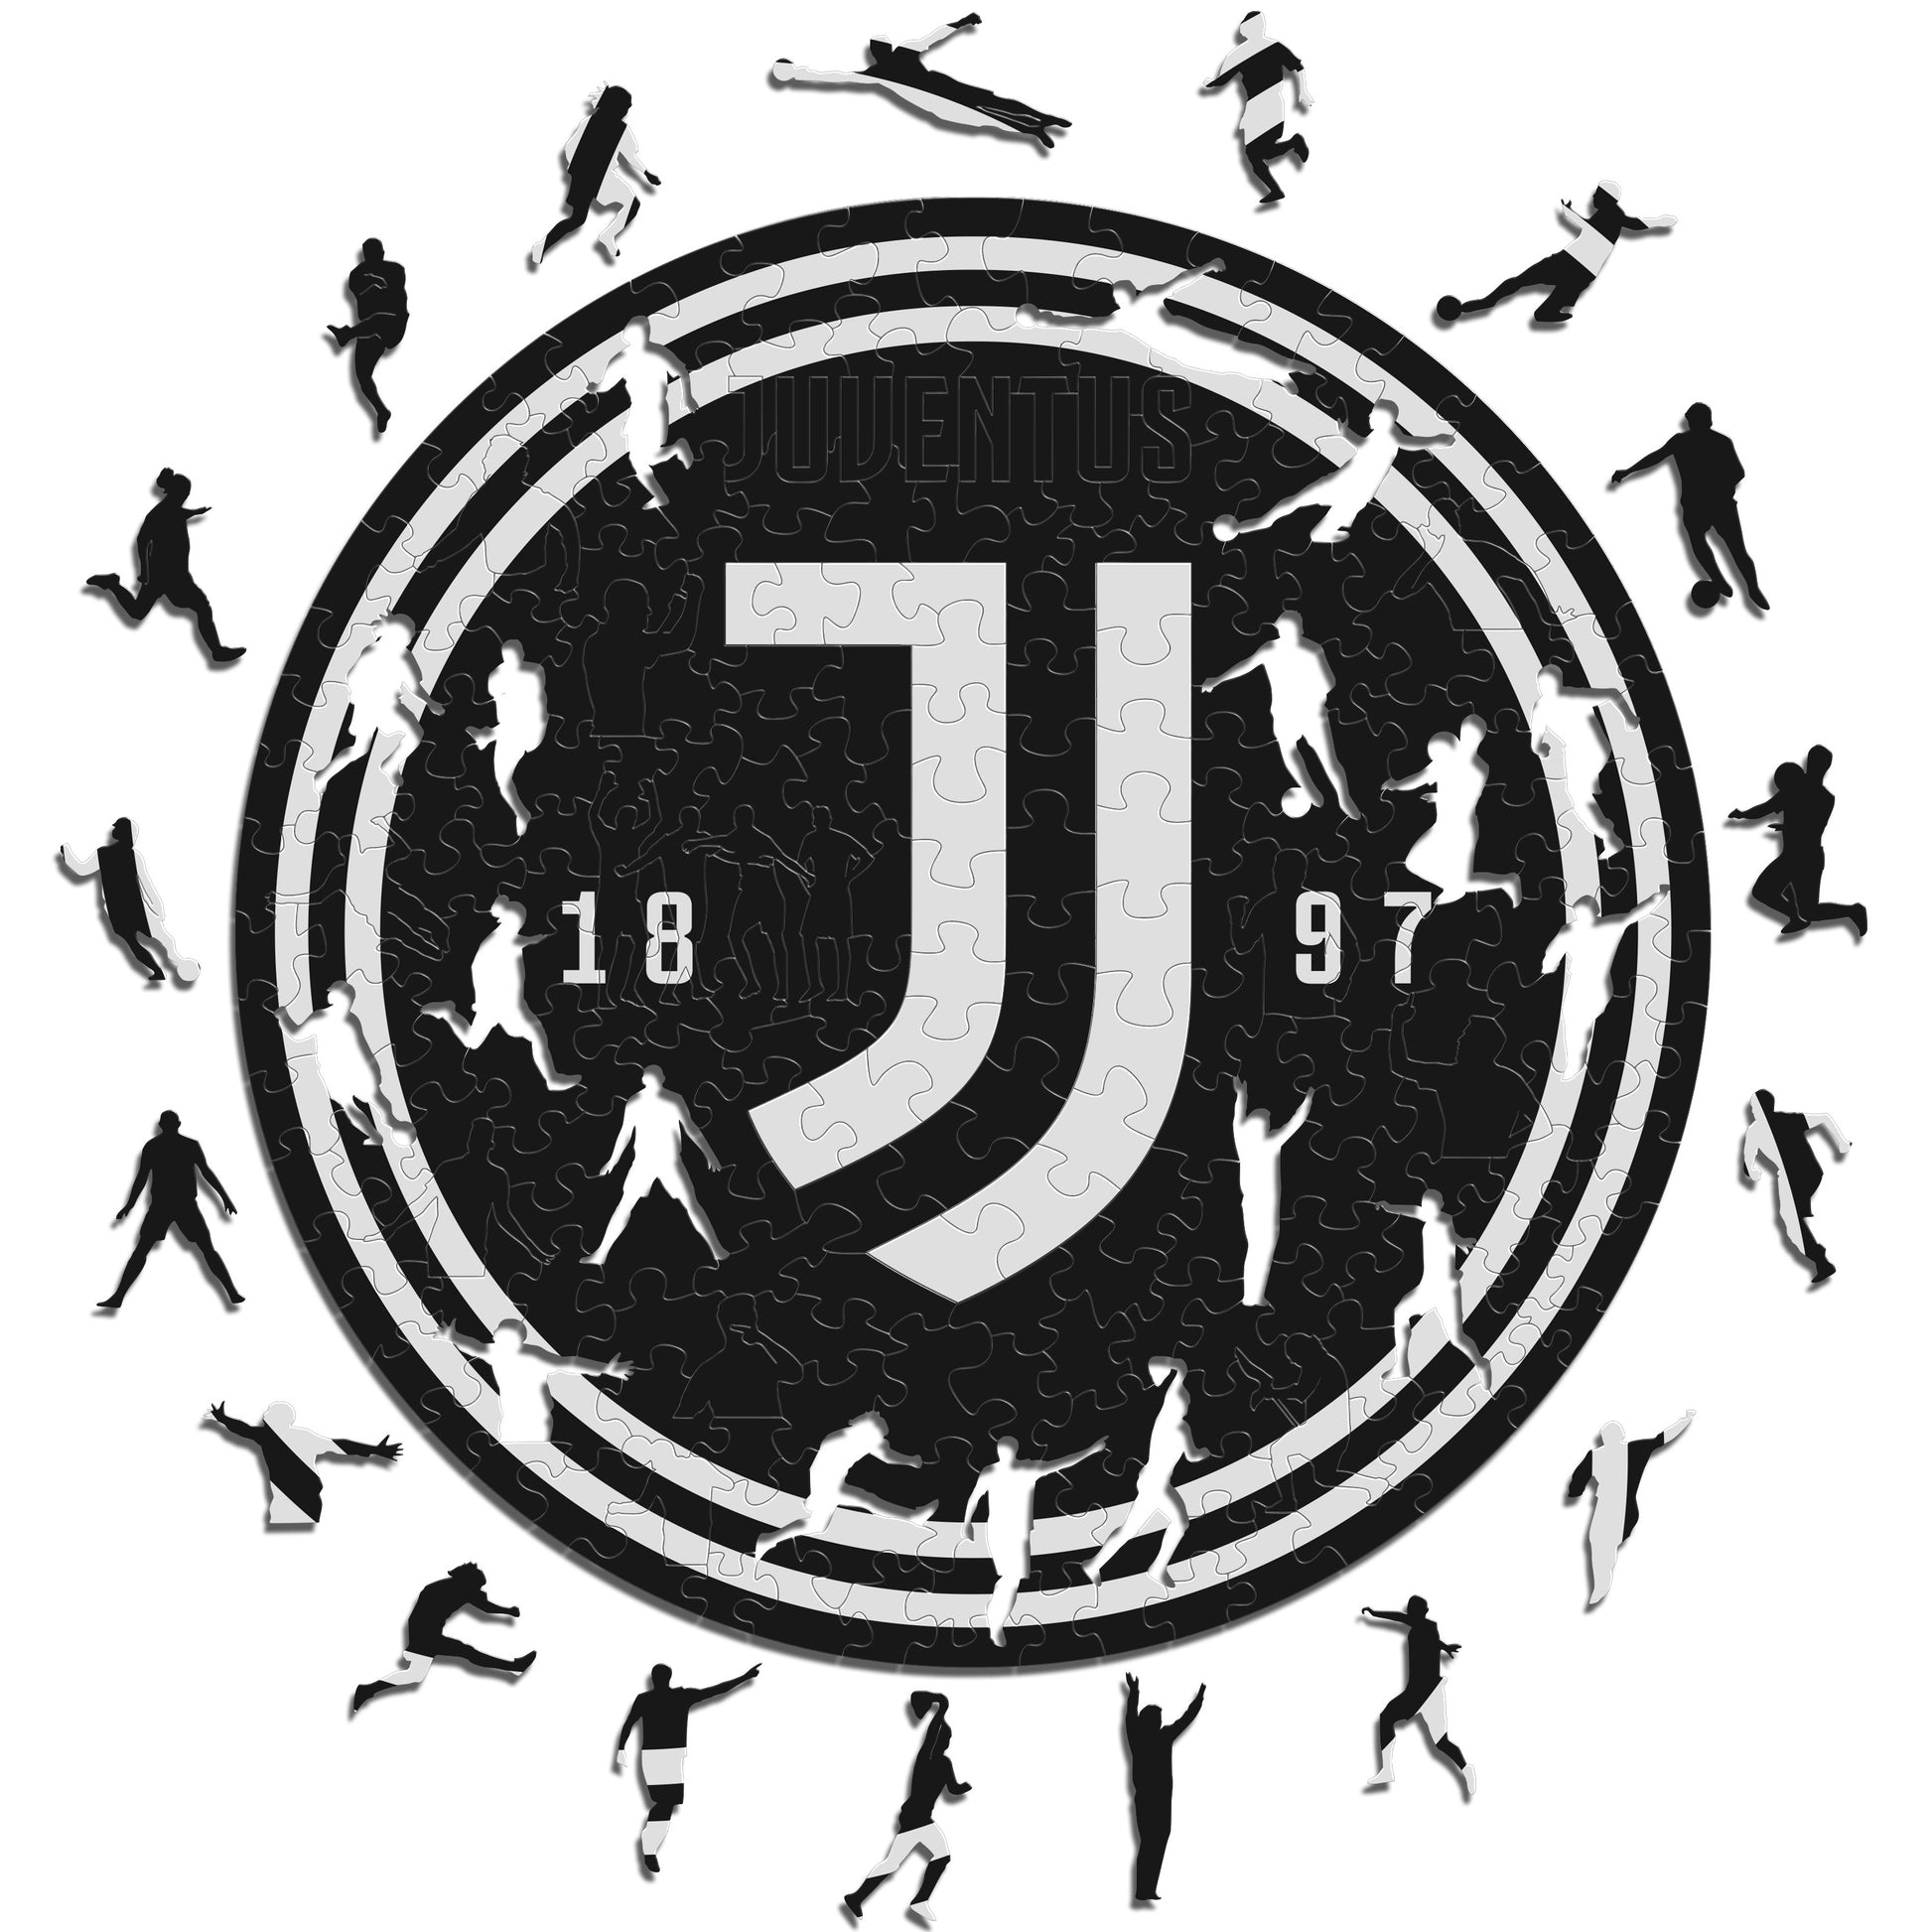 Juventus symbol - online puzzle